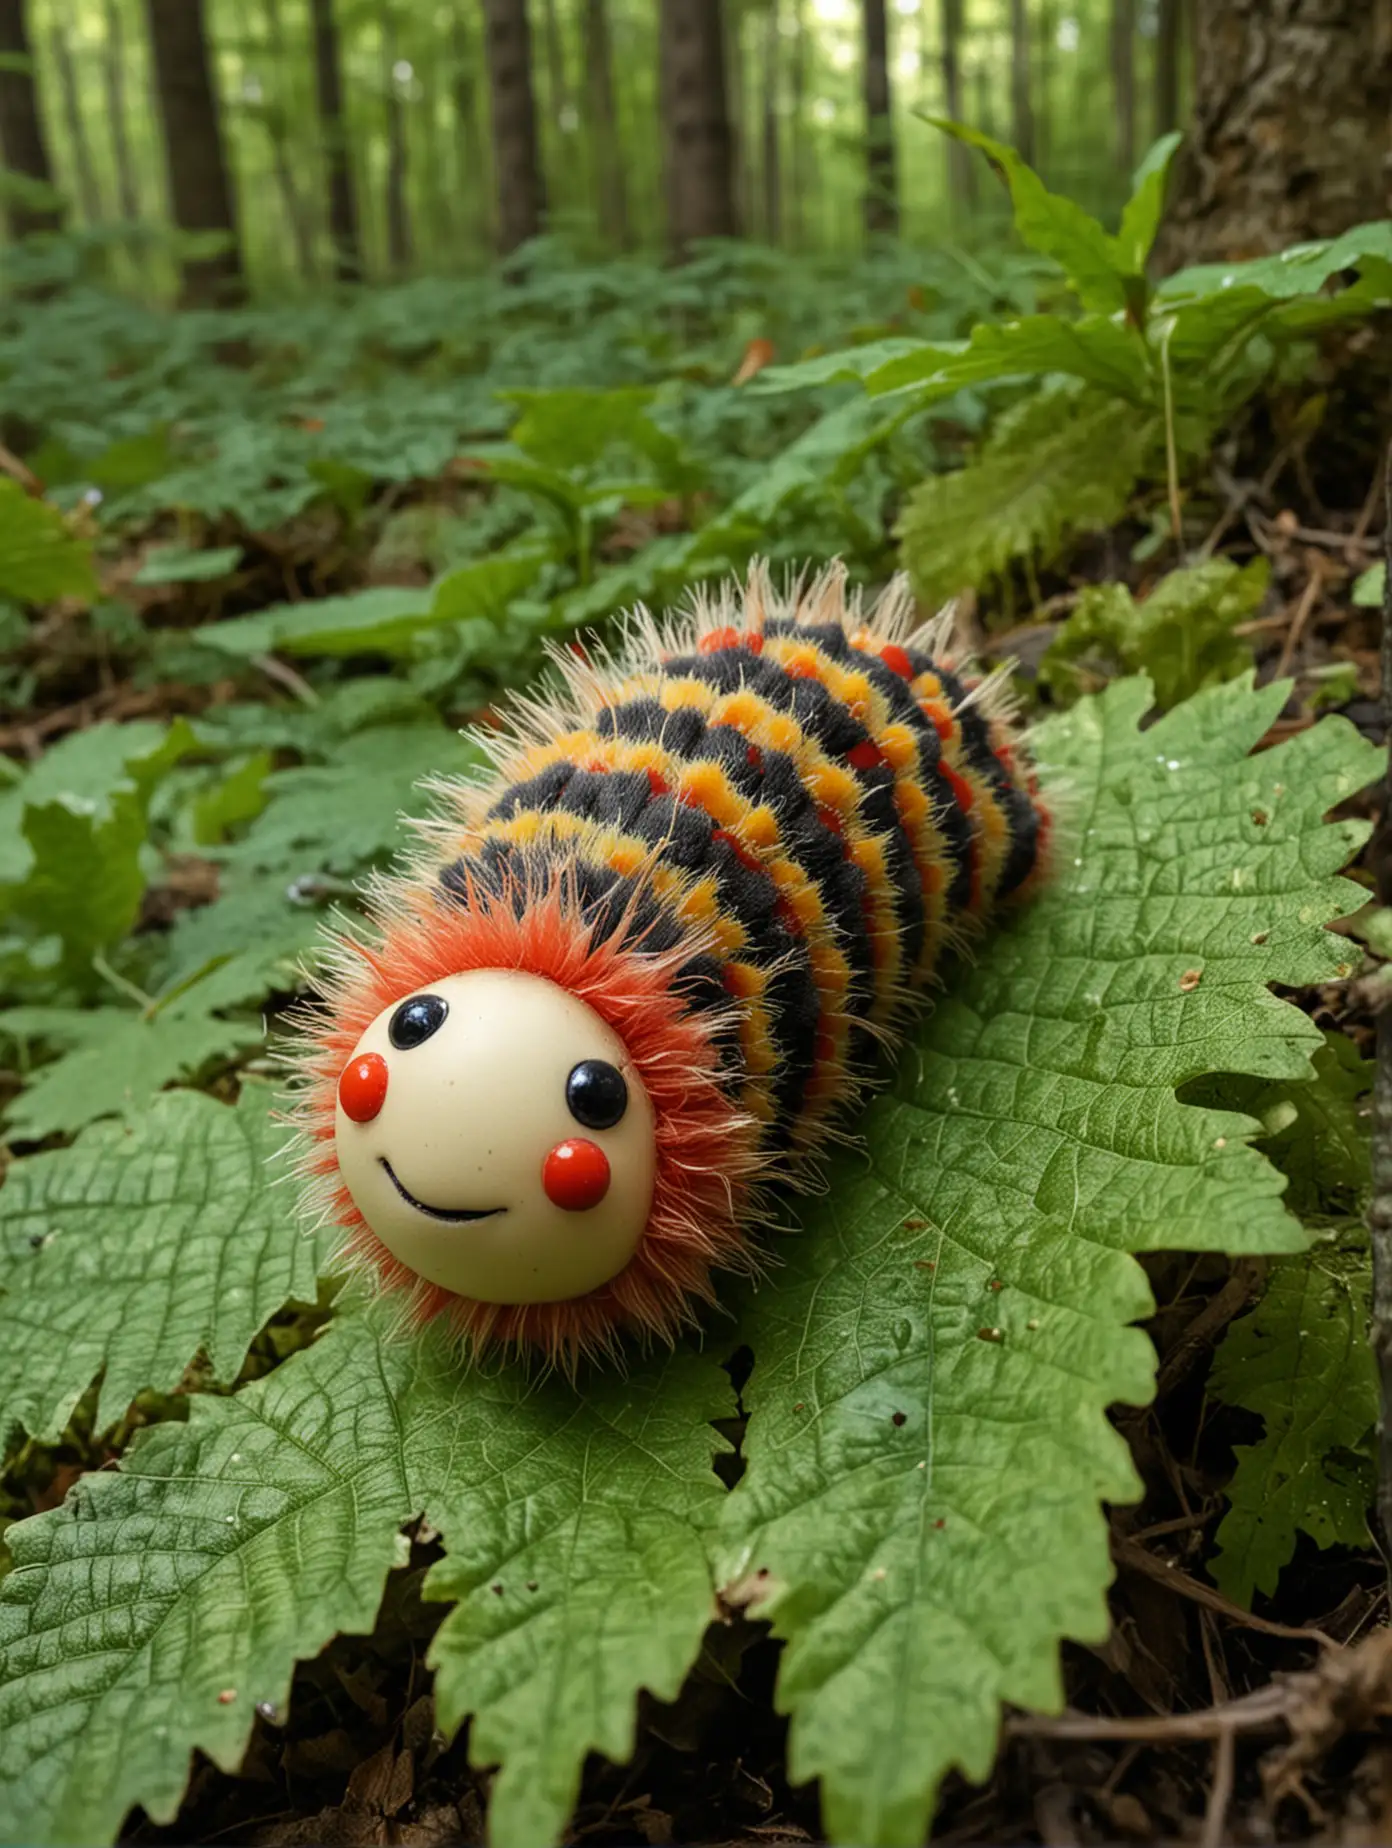 Very Cute Fat Clown Caterpillar Under a Leaf in the Forest